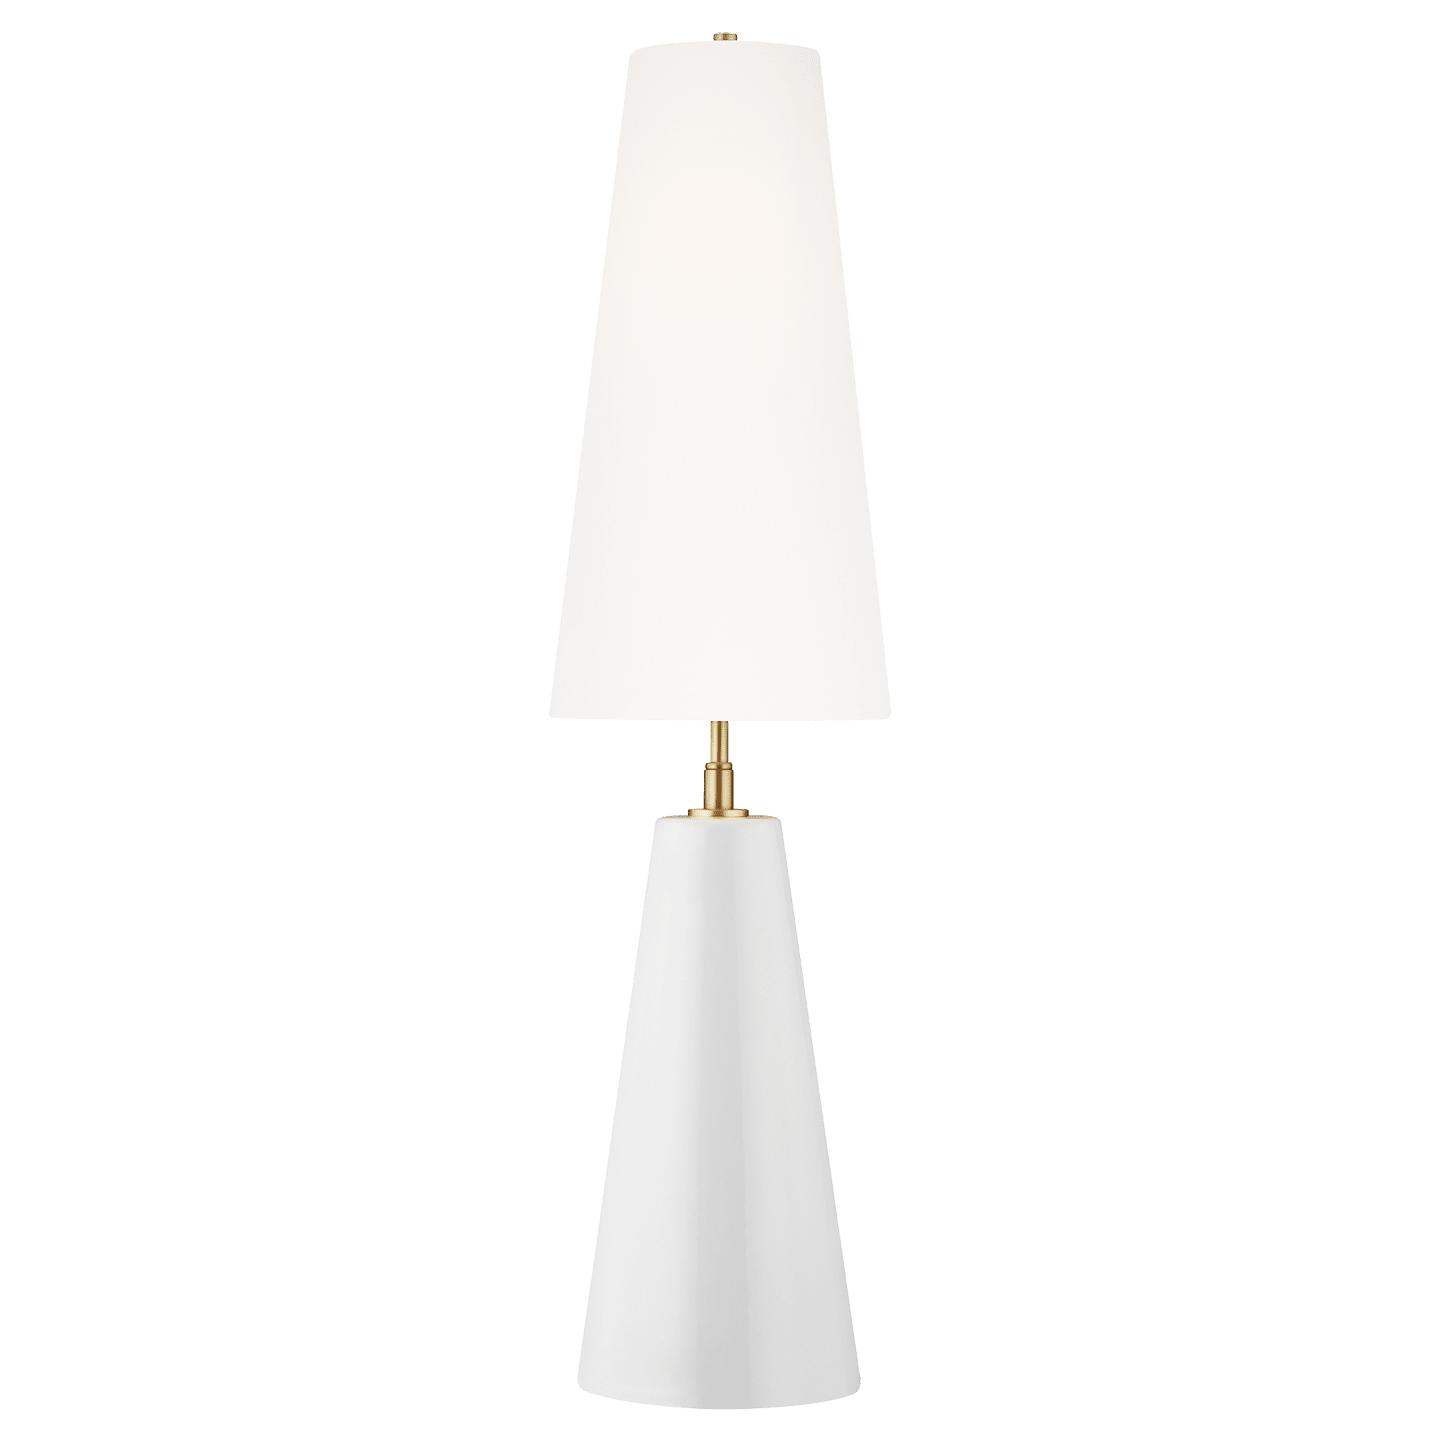 Купить Настольная лампа Lorne Table Lamp в интернет-магазине roooms.ru